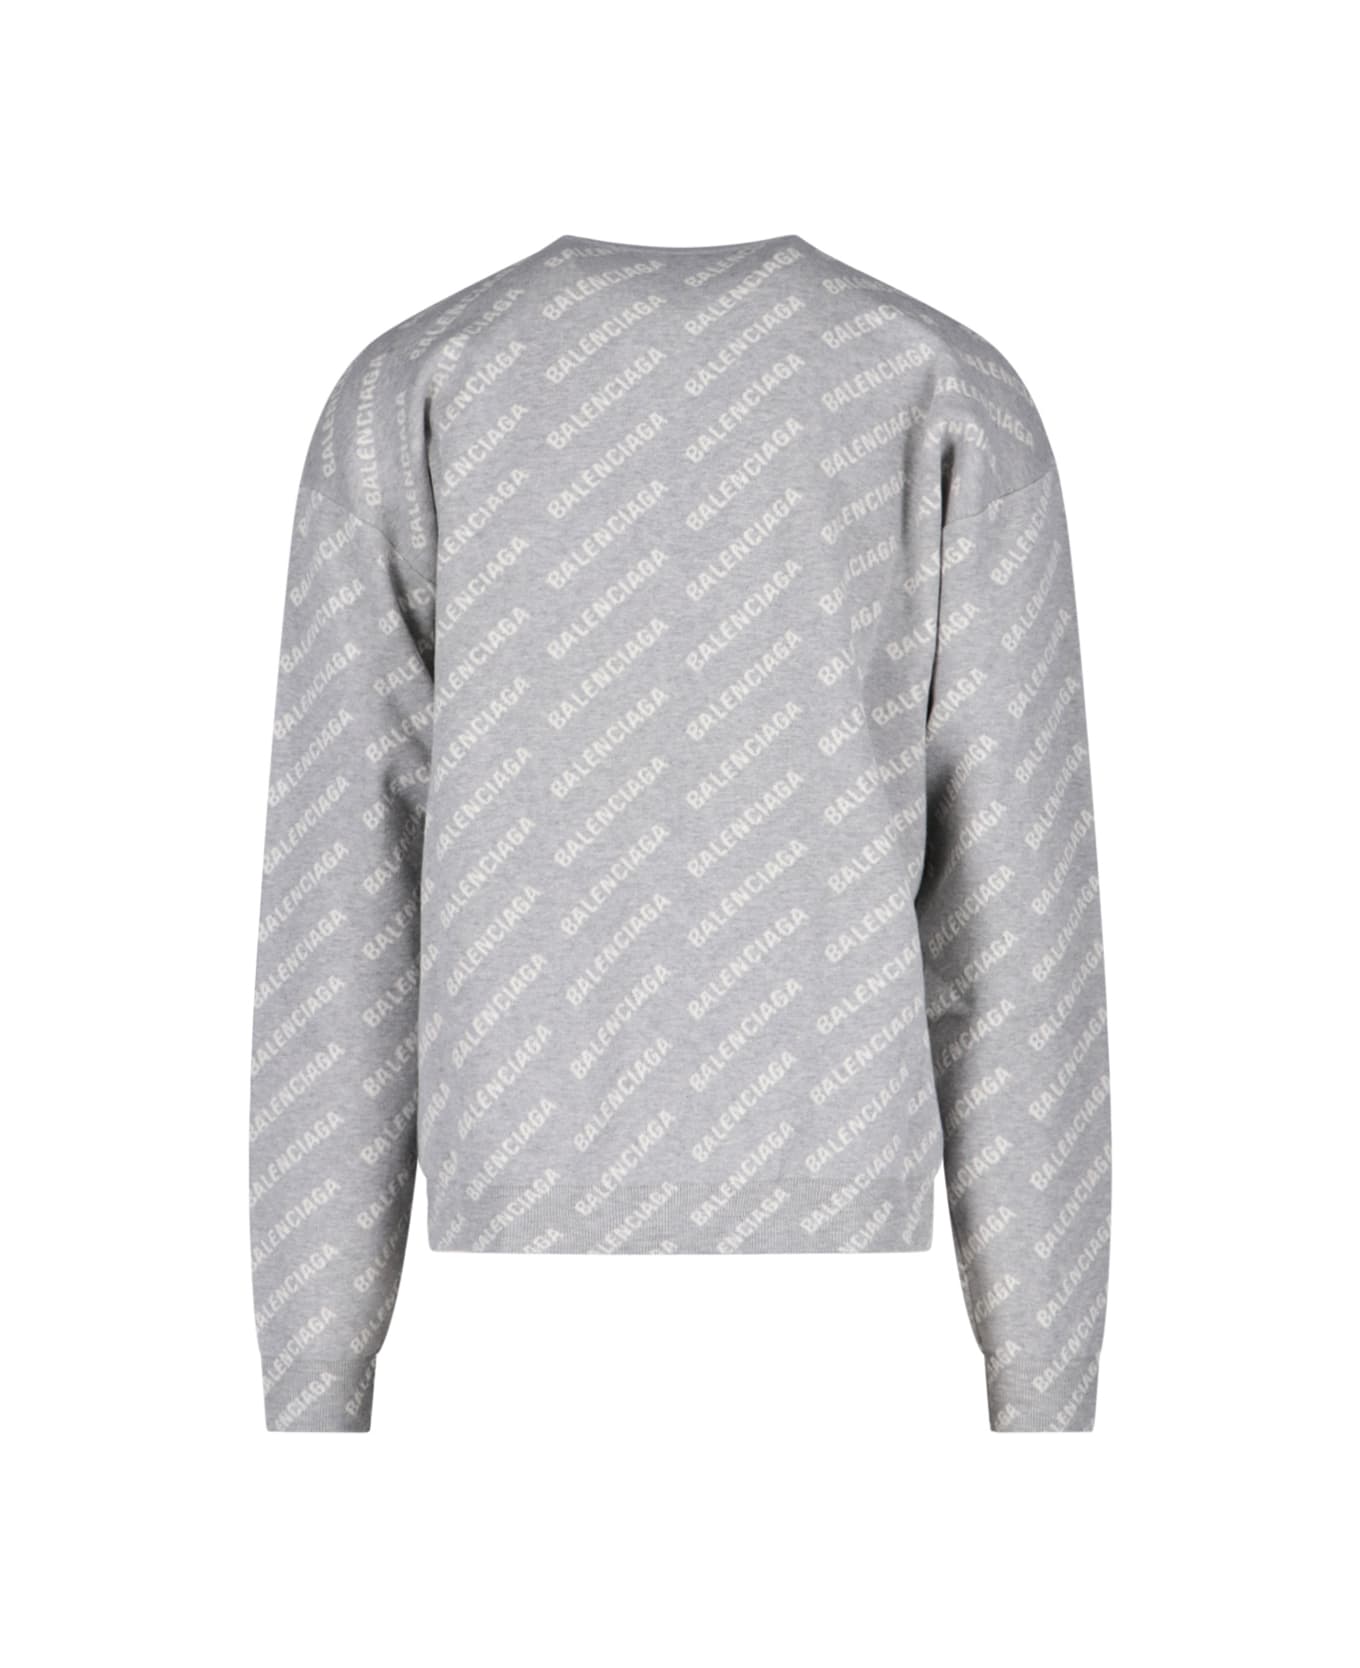 Balenciaga Sweater - GREY